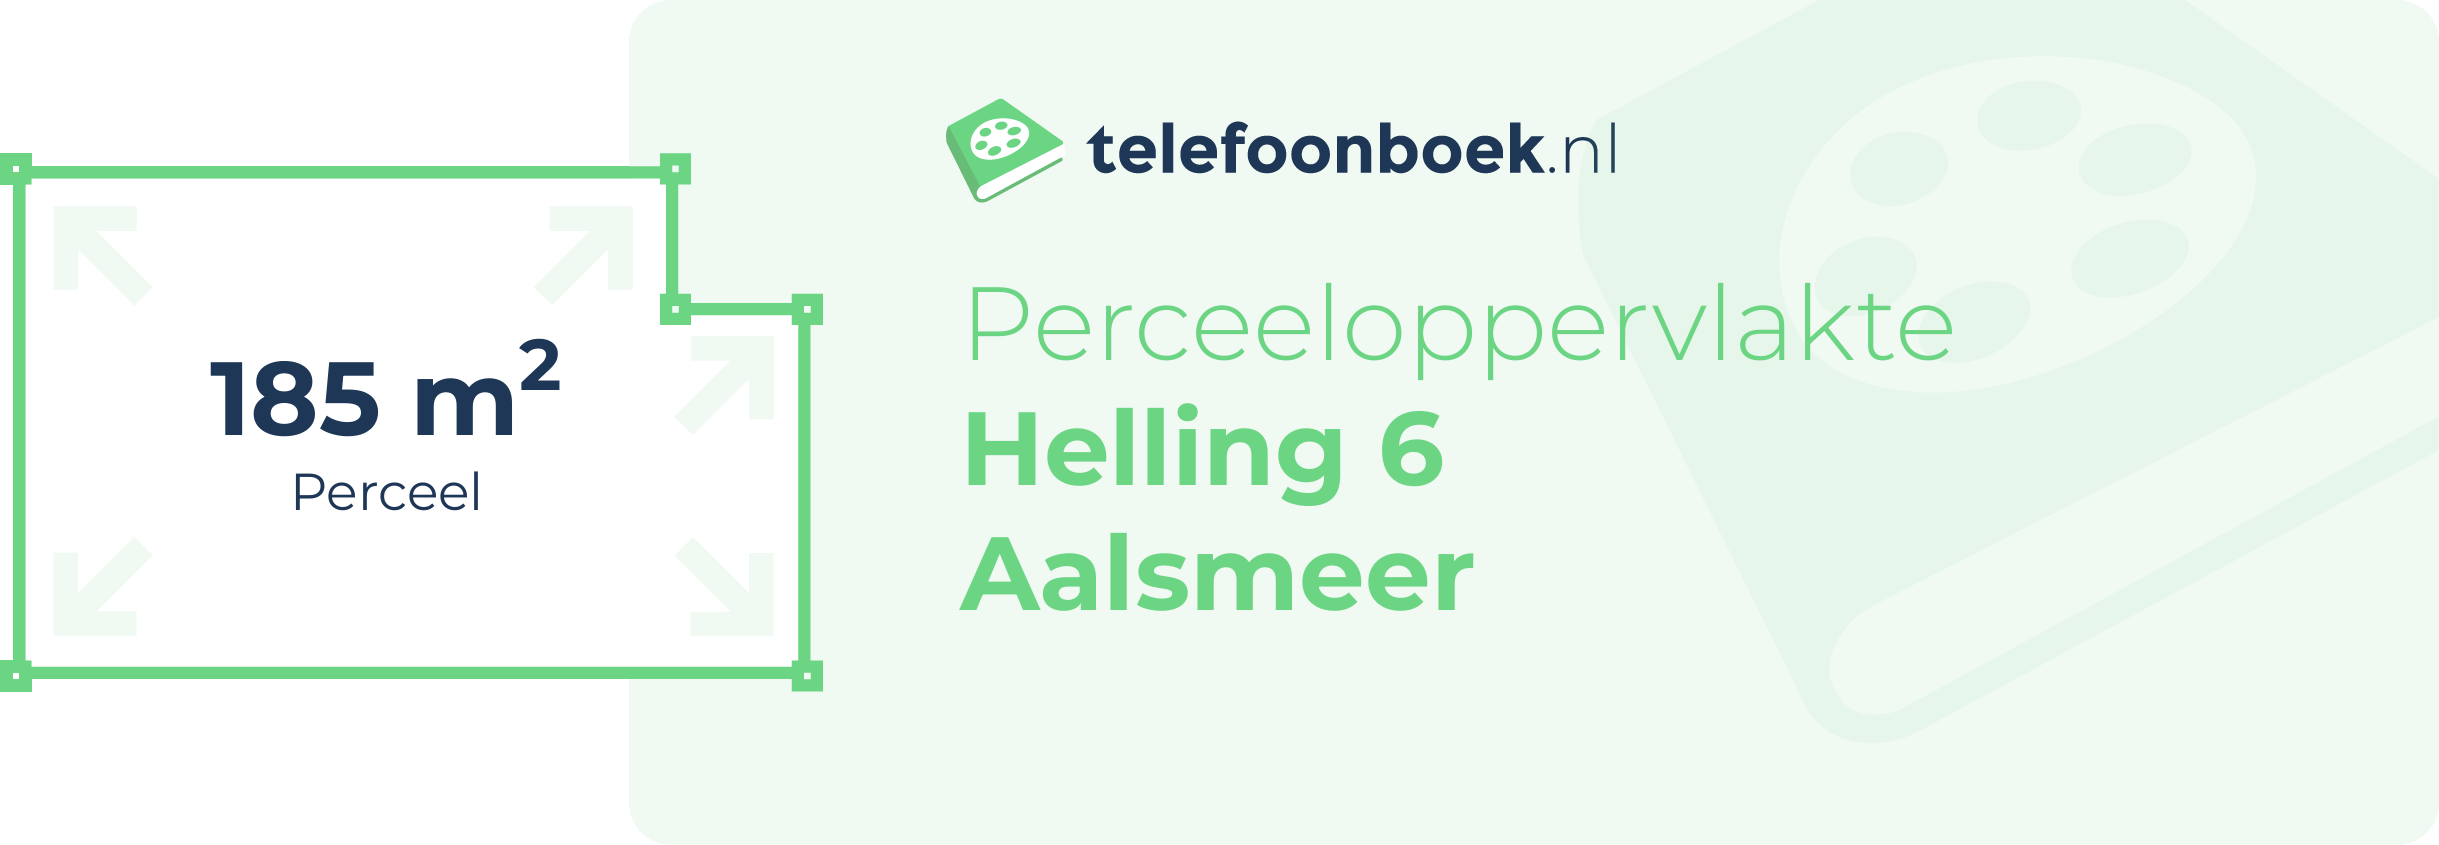 Perceeloppervlakte Helling 6 Aalsmeer